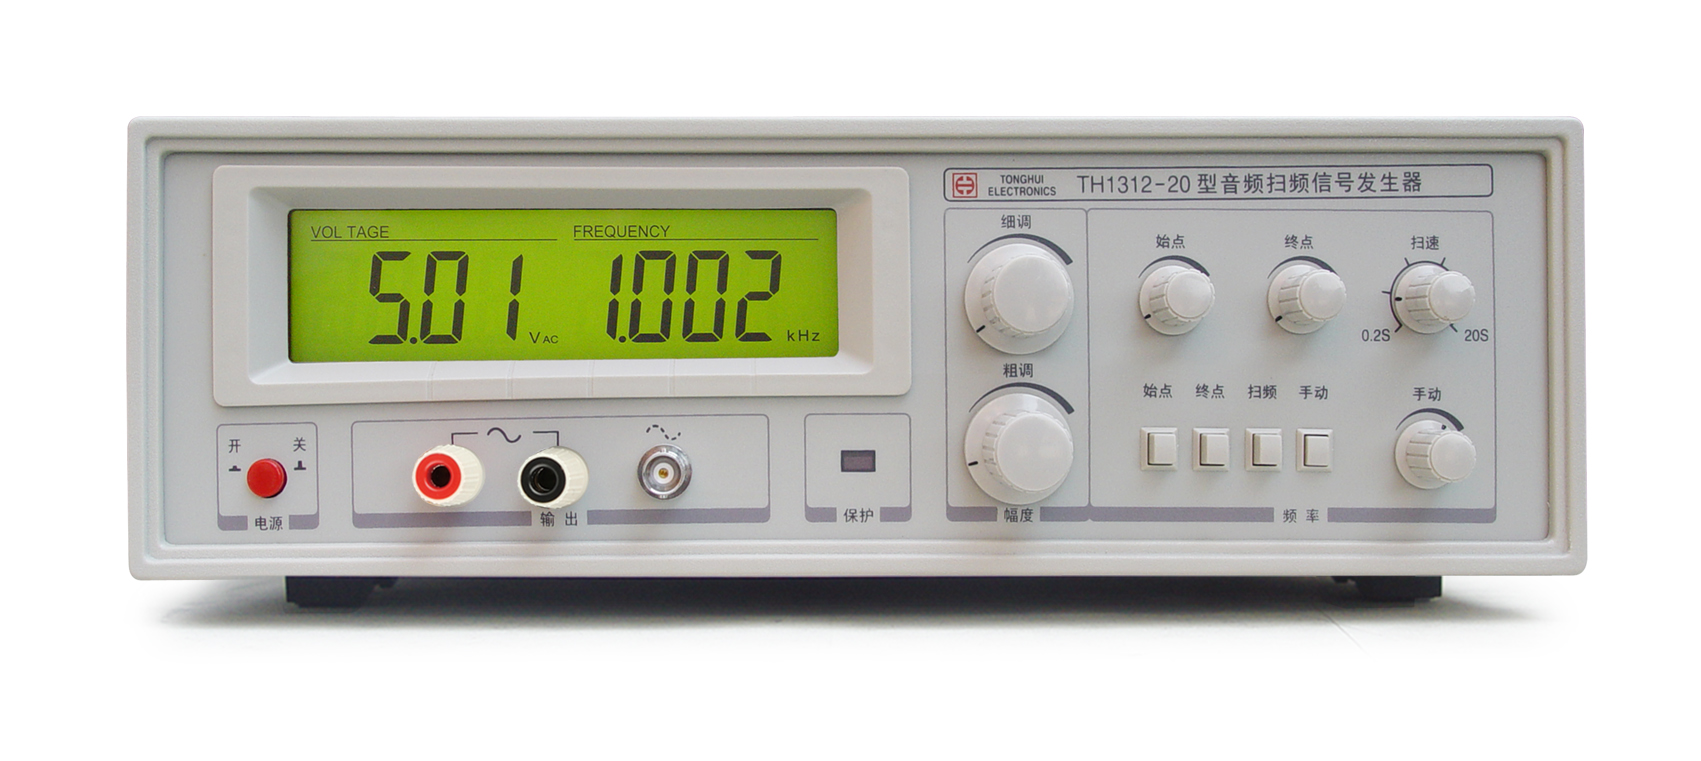 TH1312-20音频扫频信号发生器供应四川TH1312-20音频扫频信号发生器销售、价格、批发、哪家好、热线电话